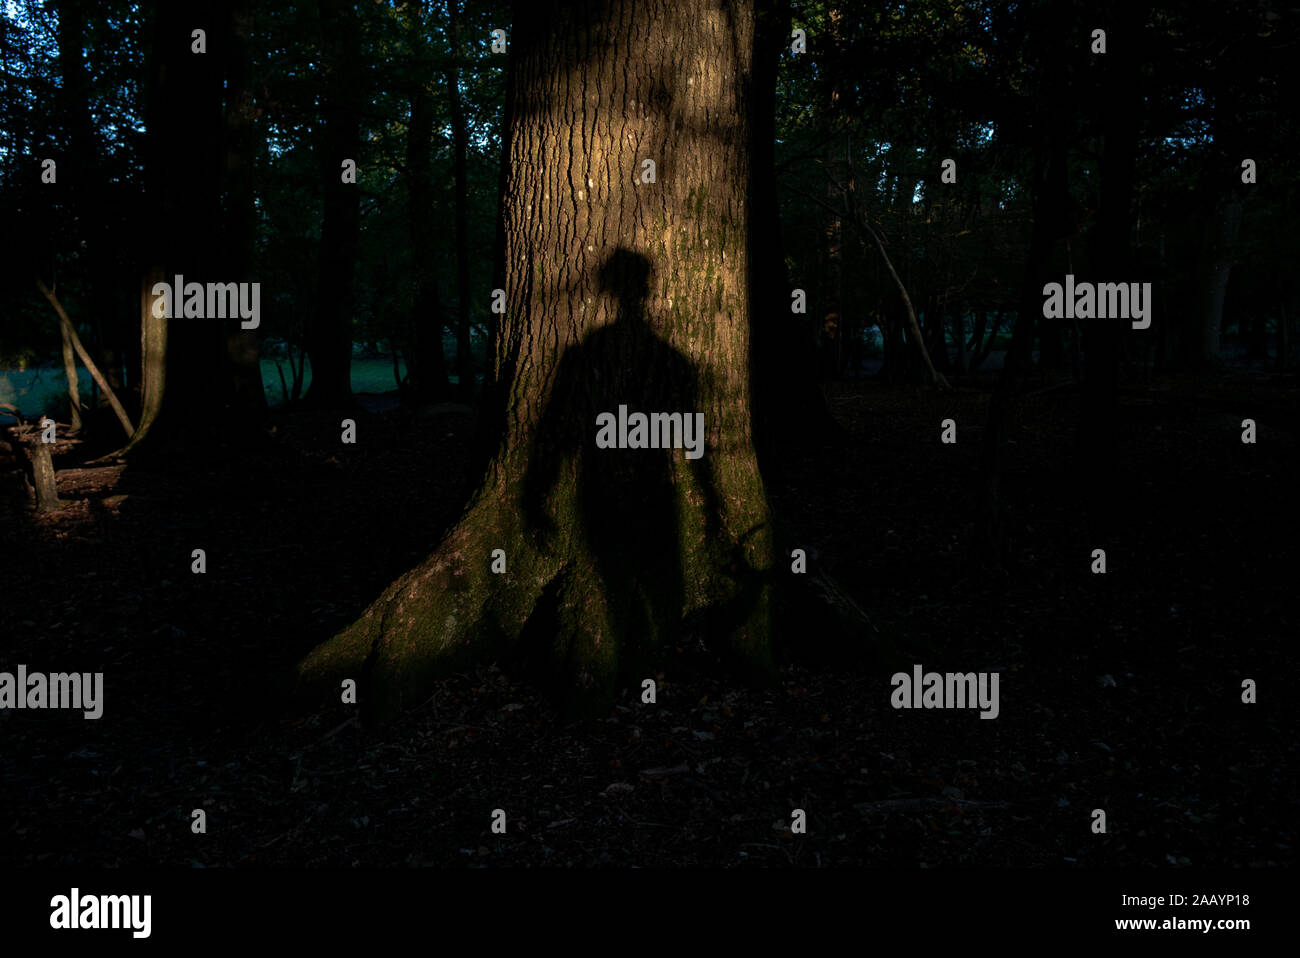 Un concept de droit aux utilisations multiples d'un homme pleine longueur ombre sur l'arbre de chêne provoquant la peur ou mystère dans une forêt. Banque D'Images